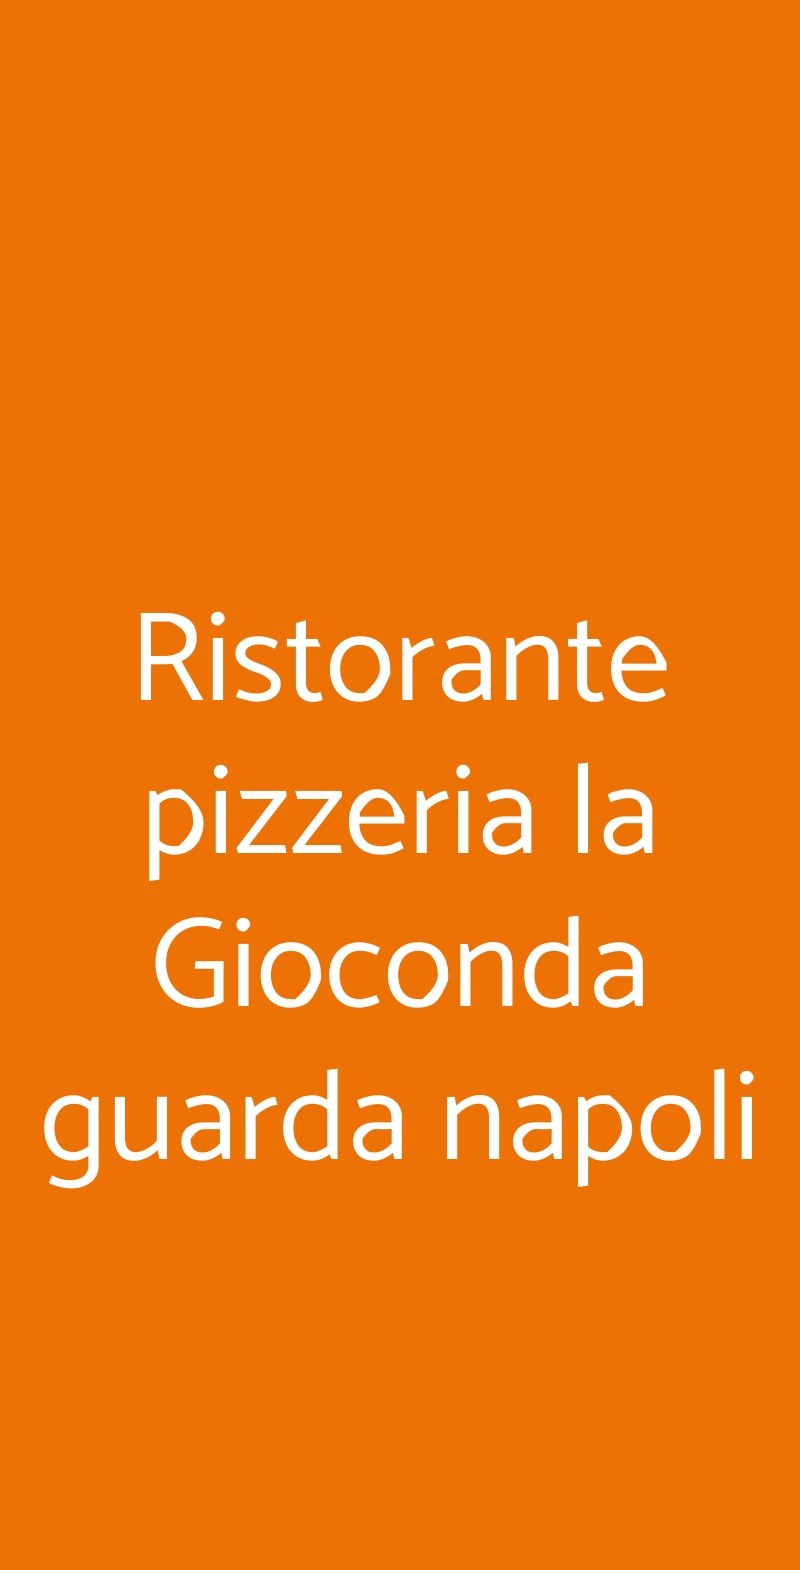 Ristorante pizzeria la Gioconda guarda napoli Firenze menù 1 pagina